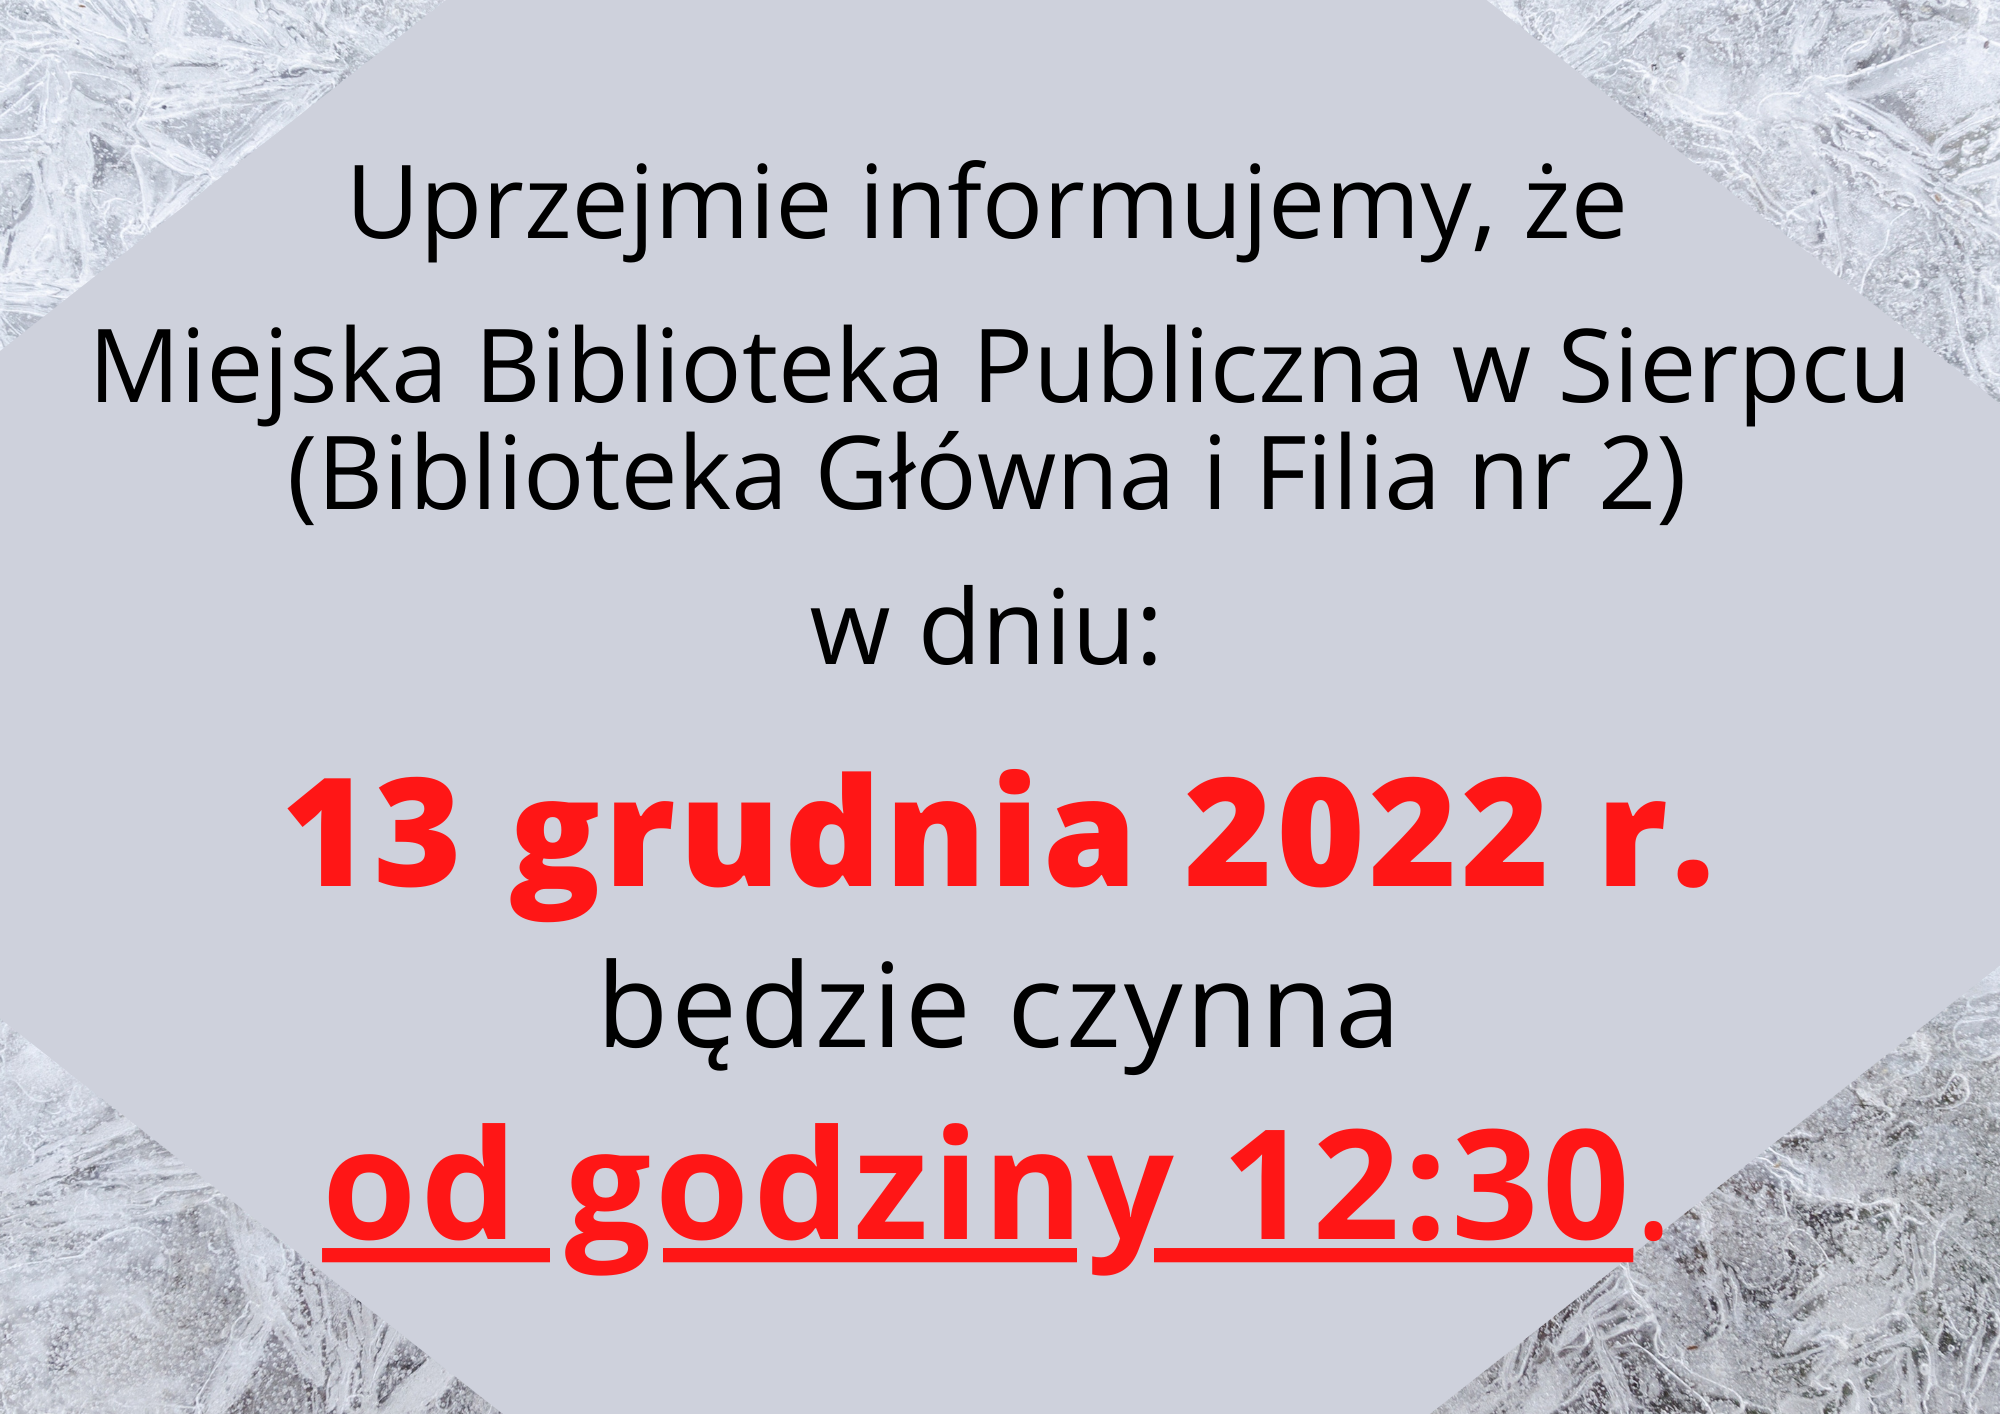 Uprzejmie informujemy, że Miejska Biblioteka Publiczna w Sierpcu (Biblioteka Główna i Filia nr 2) w dniu: 13 grudnia 2022 r. będzie czynna od godziny 12:30.